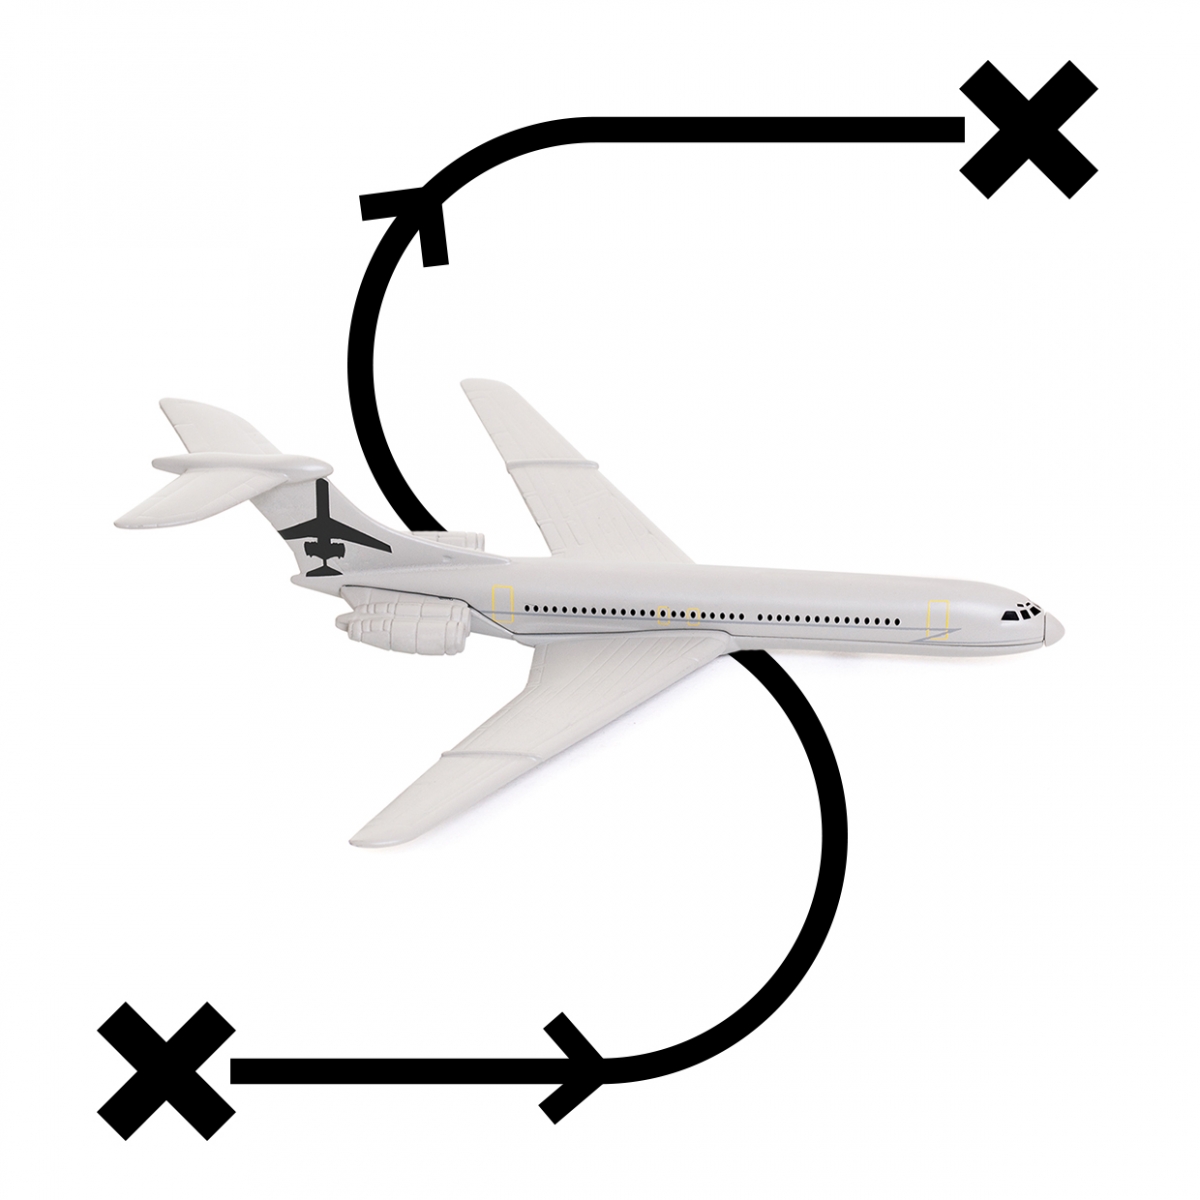 Imagen en la que se ve el concepto viajar en avión